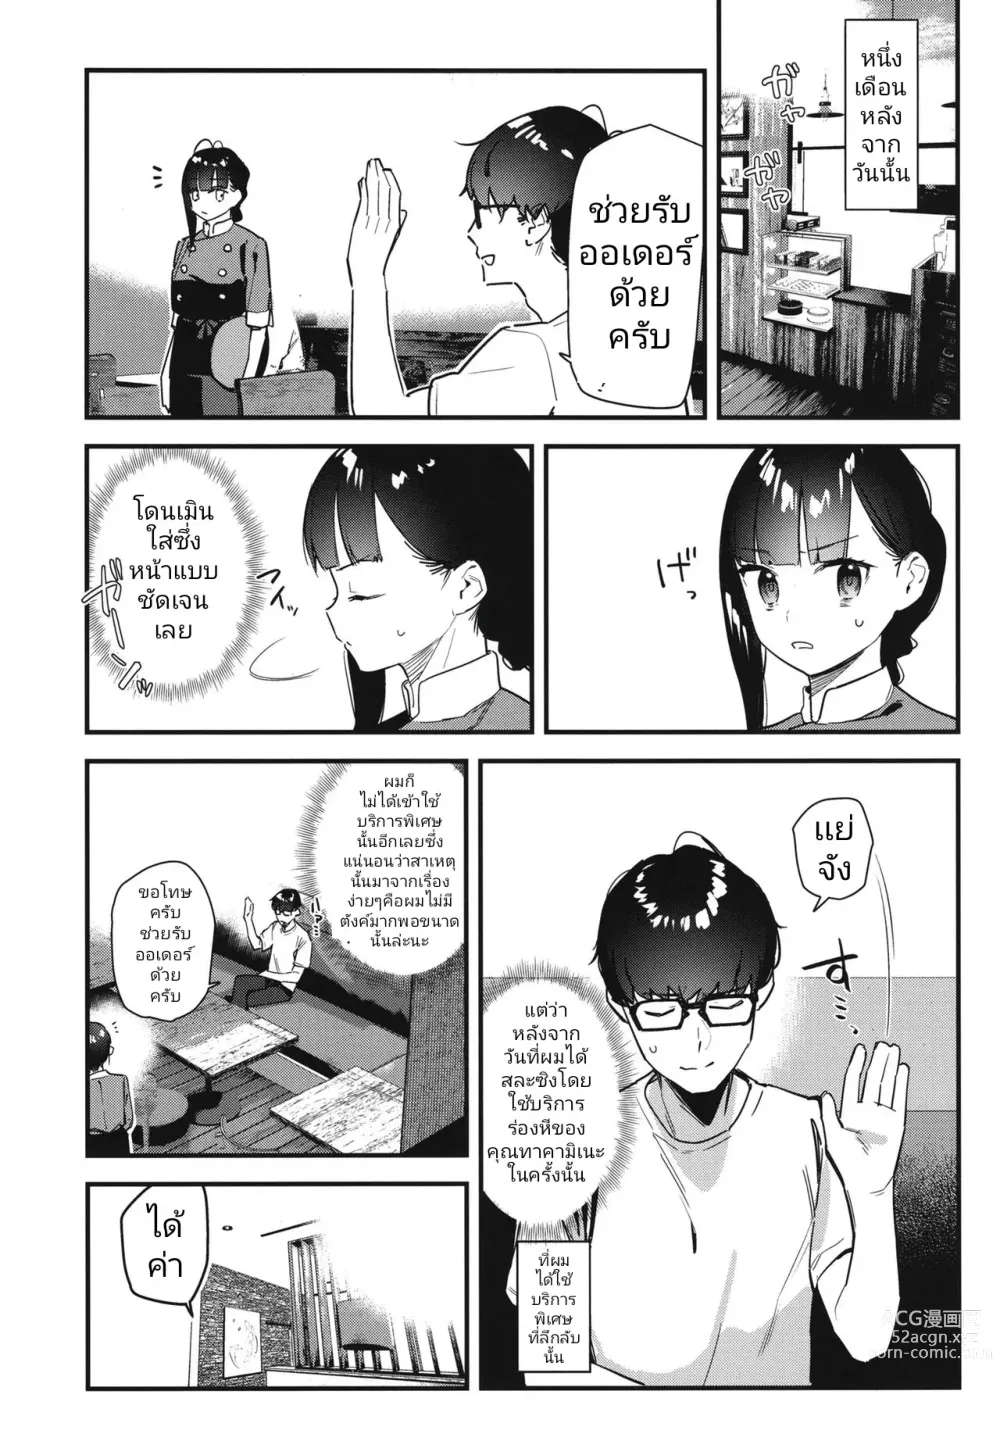 Page 7 of doujinshi Suki na Ko no Beit Saki ga H na Service o Shiteiru 2 I เพื่อนสาวสุดป๊อปที่ผมแอบชอบอยู่เธอทำงานขายรูเป็นงานพิเศษ 2